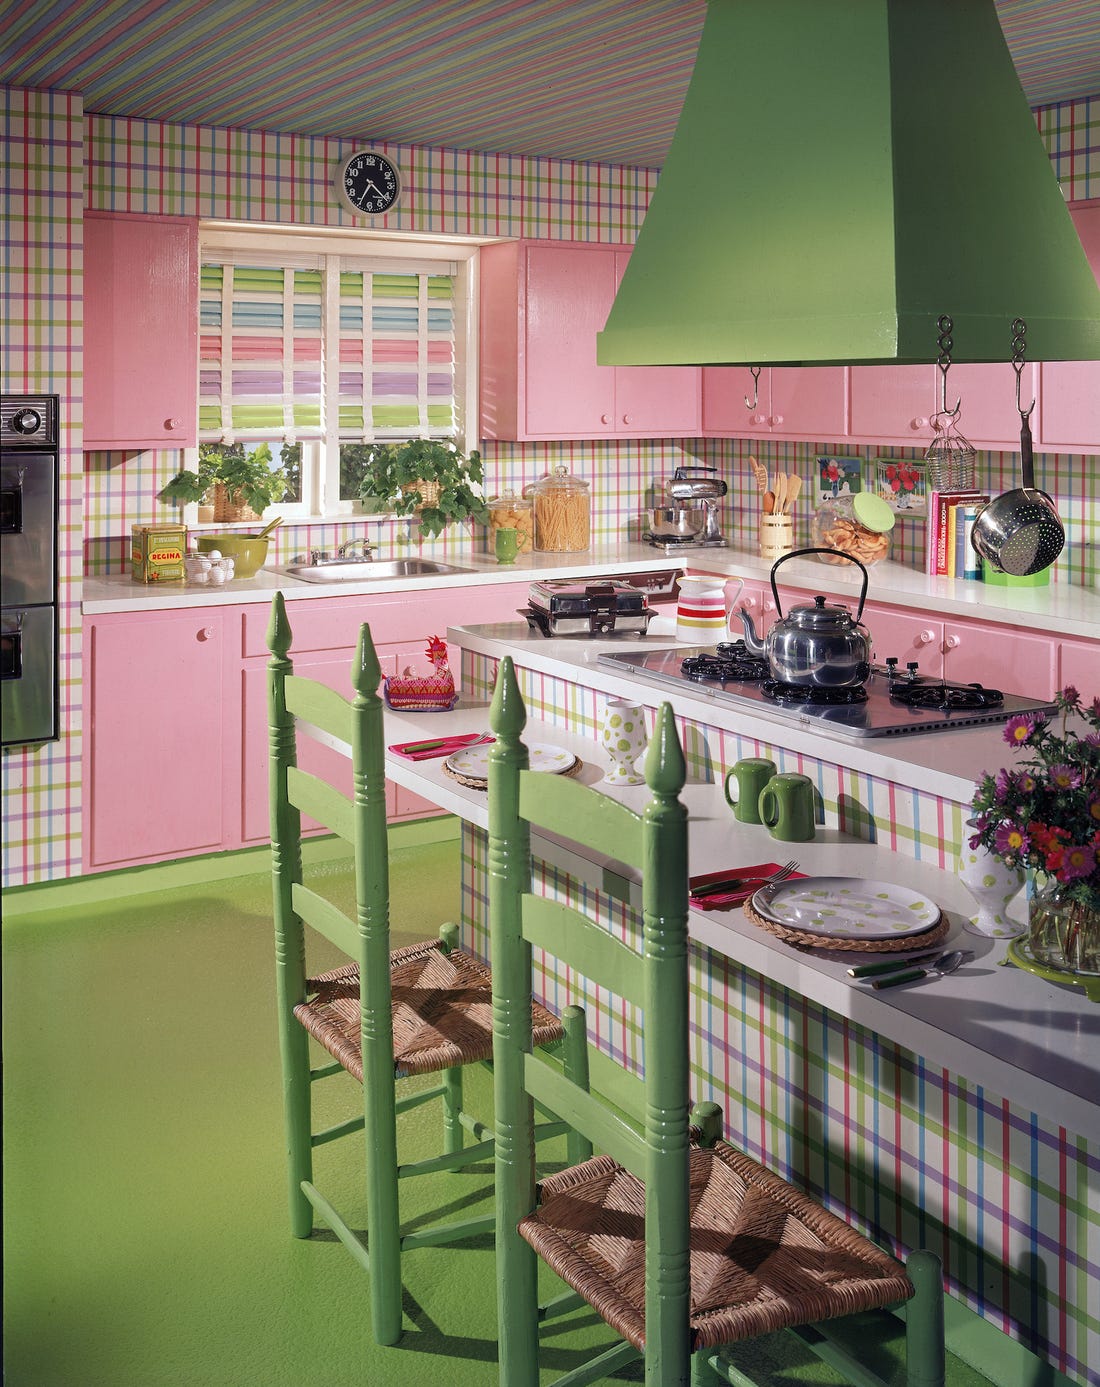 cuisine de couleur rose avec des meubles hauts et bas rose sol et chaises verts et ilot central à rayures